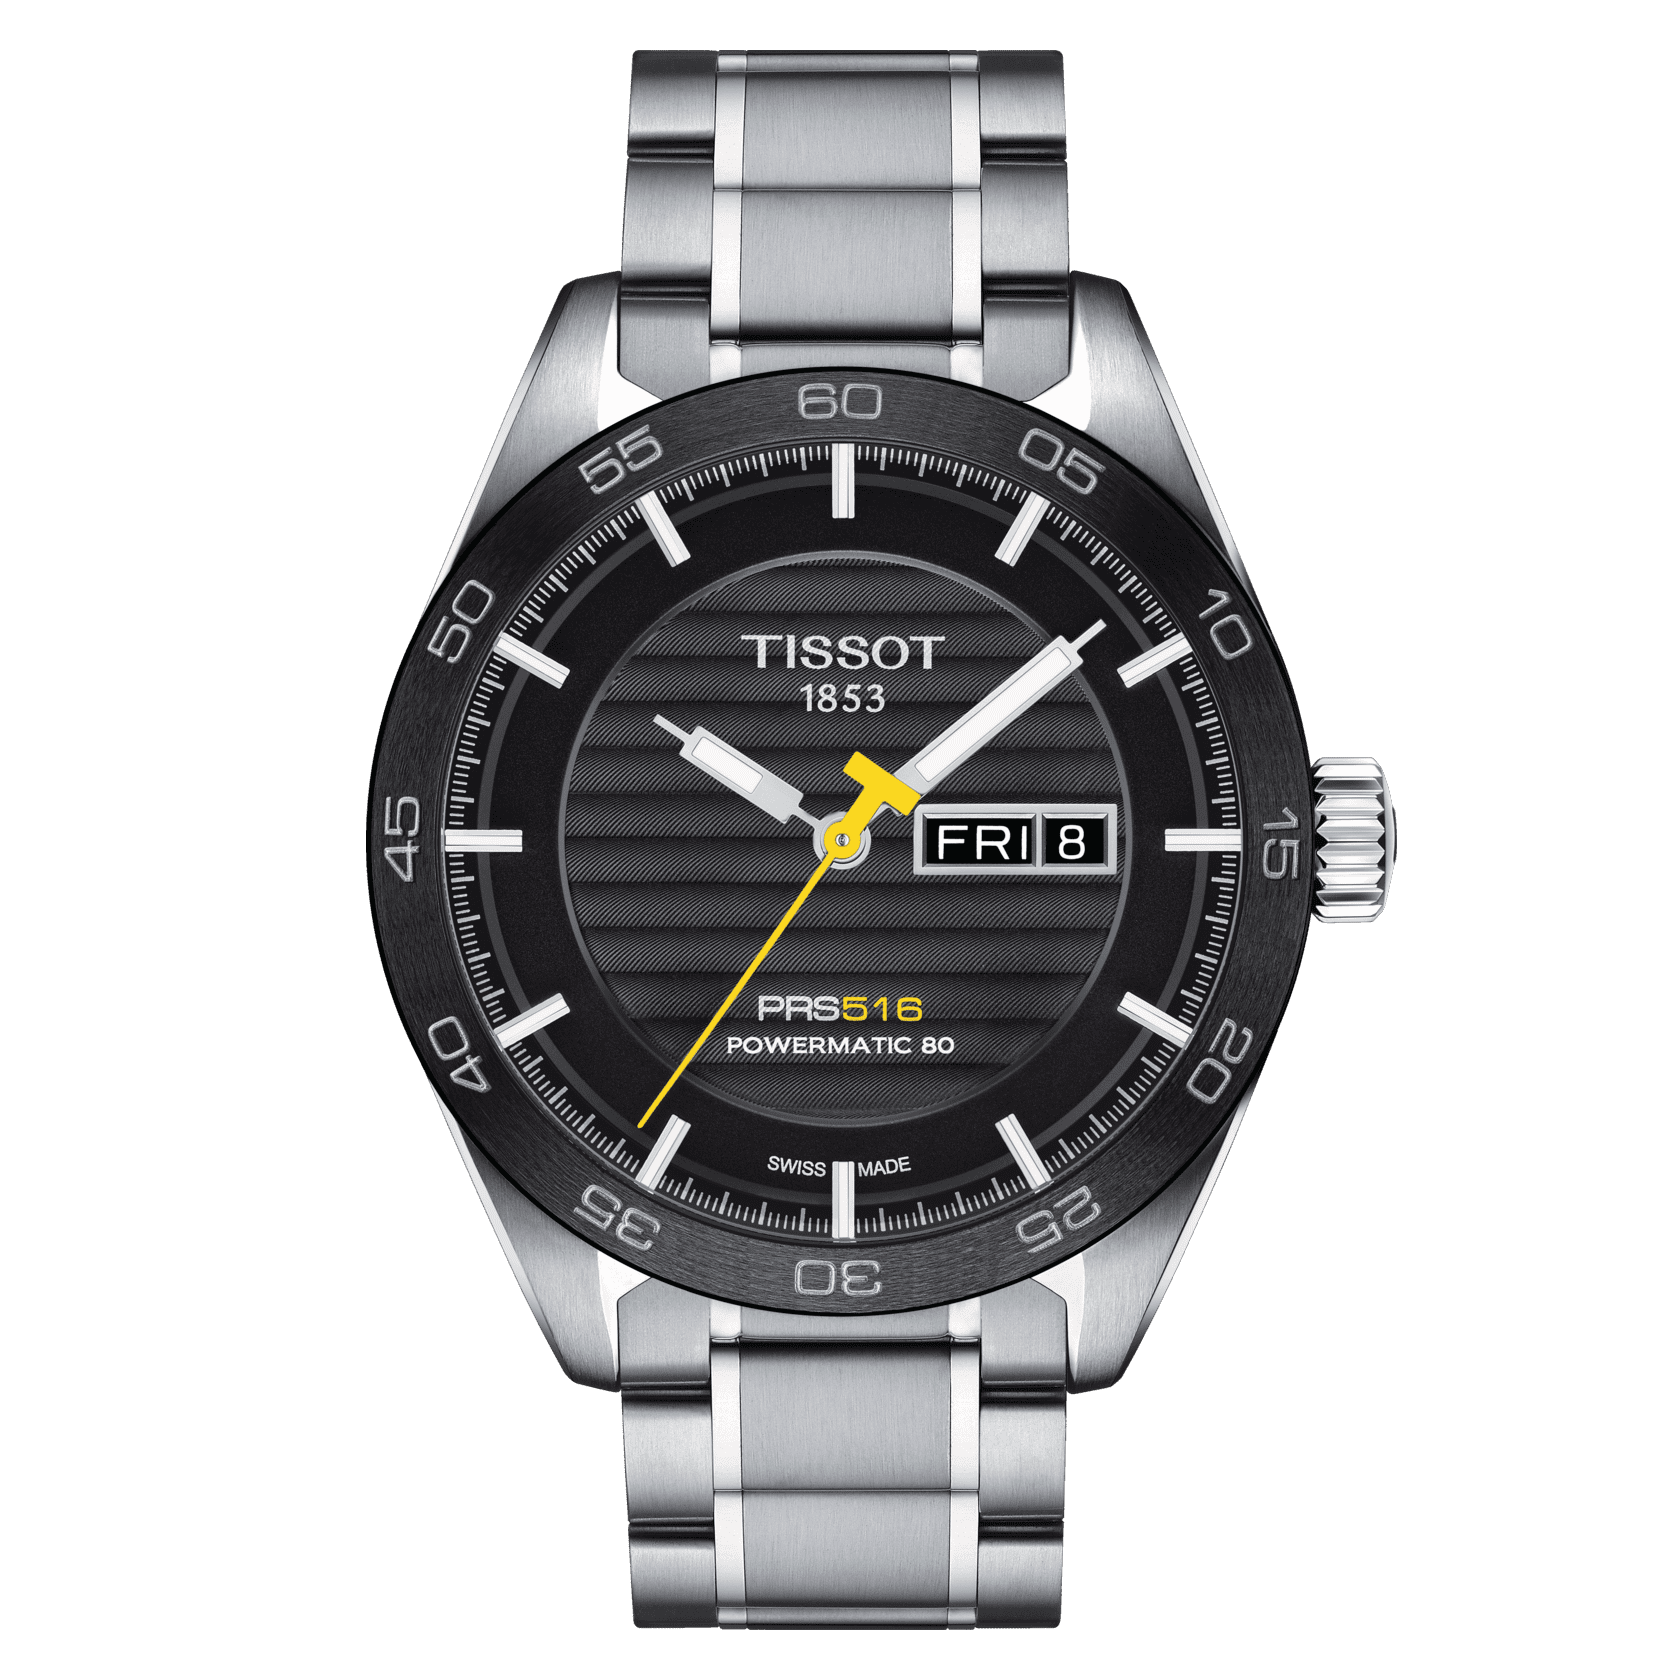 Fake Diamond Breitling Watches